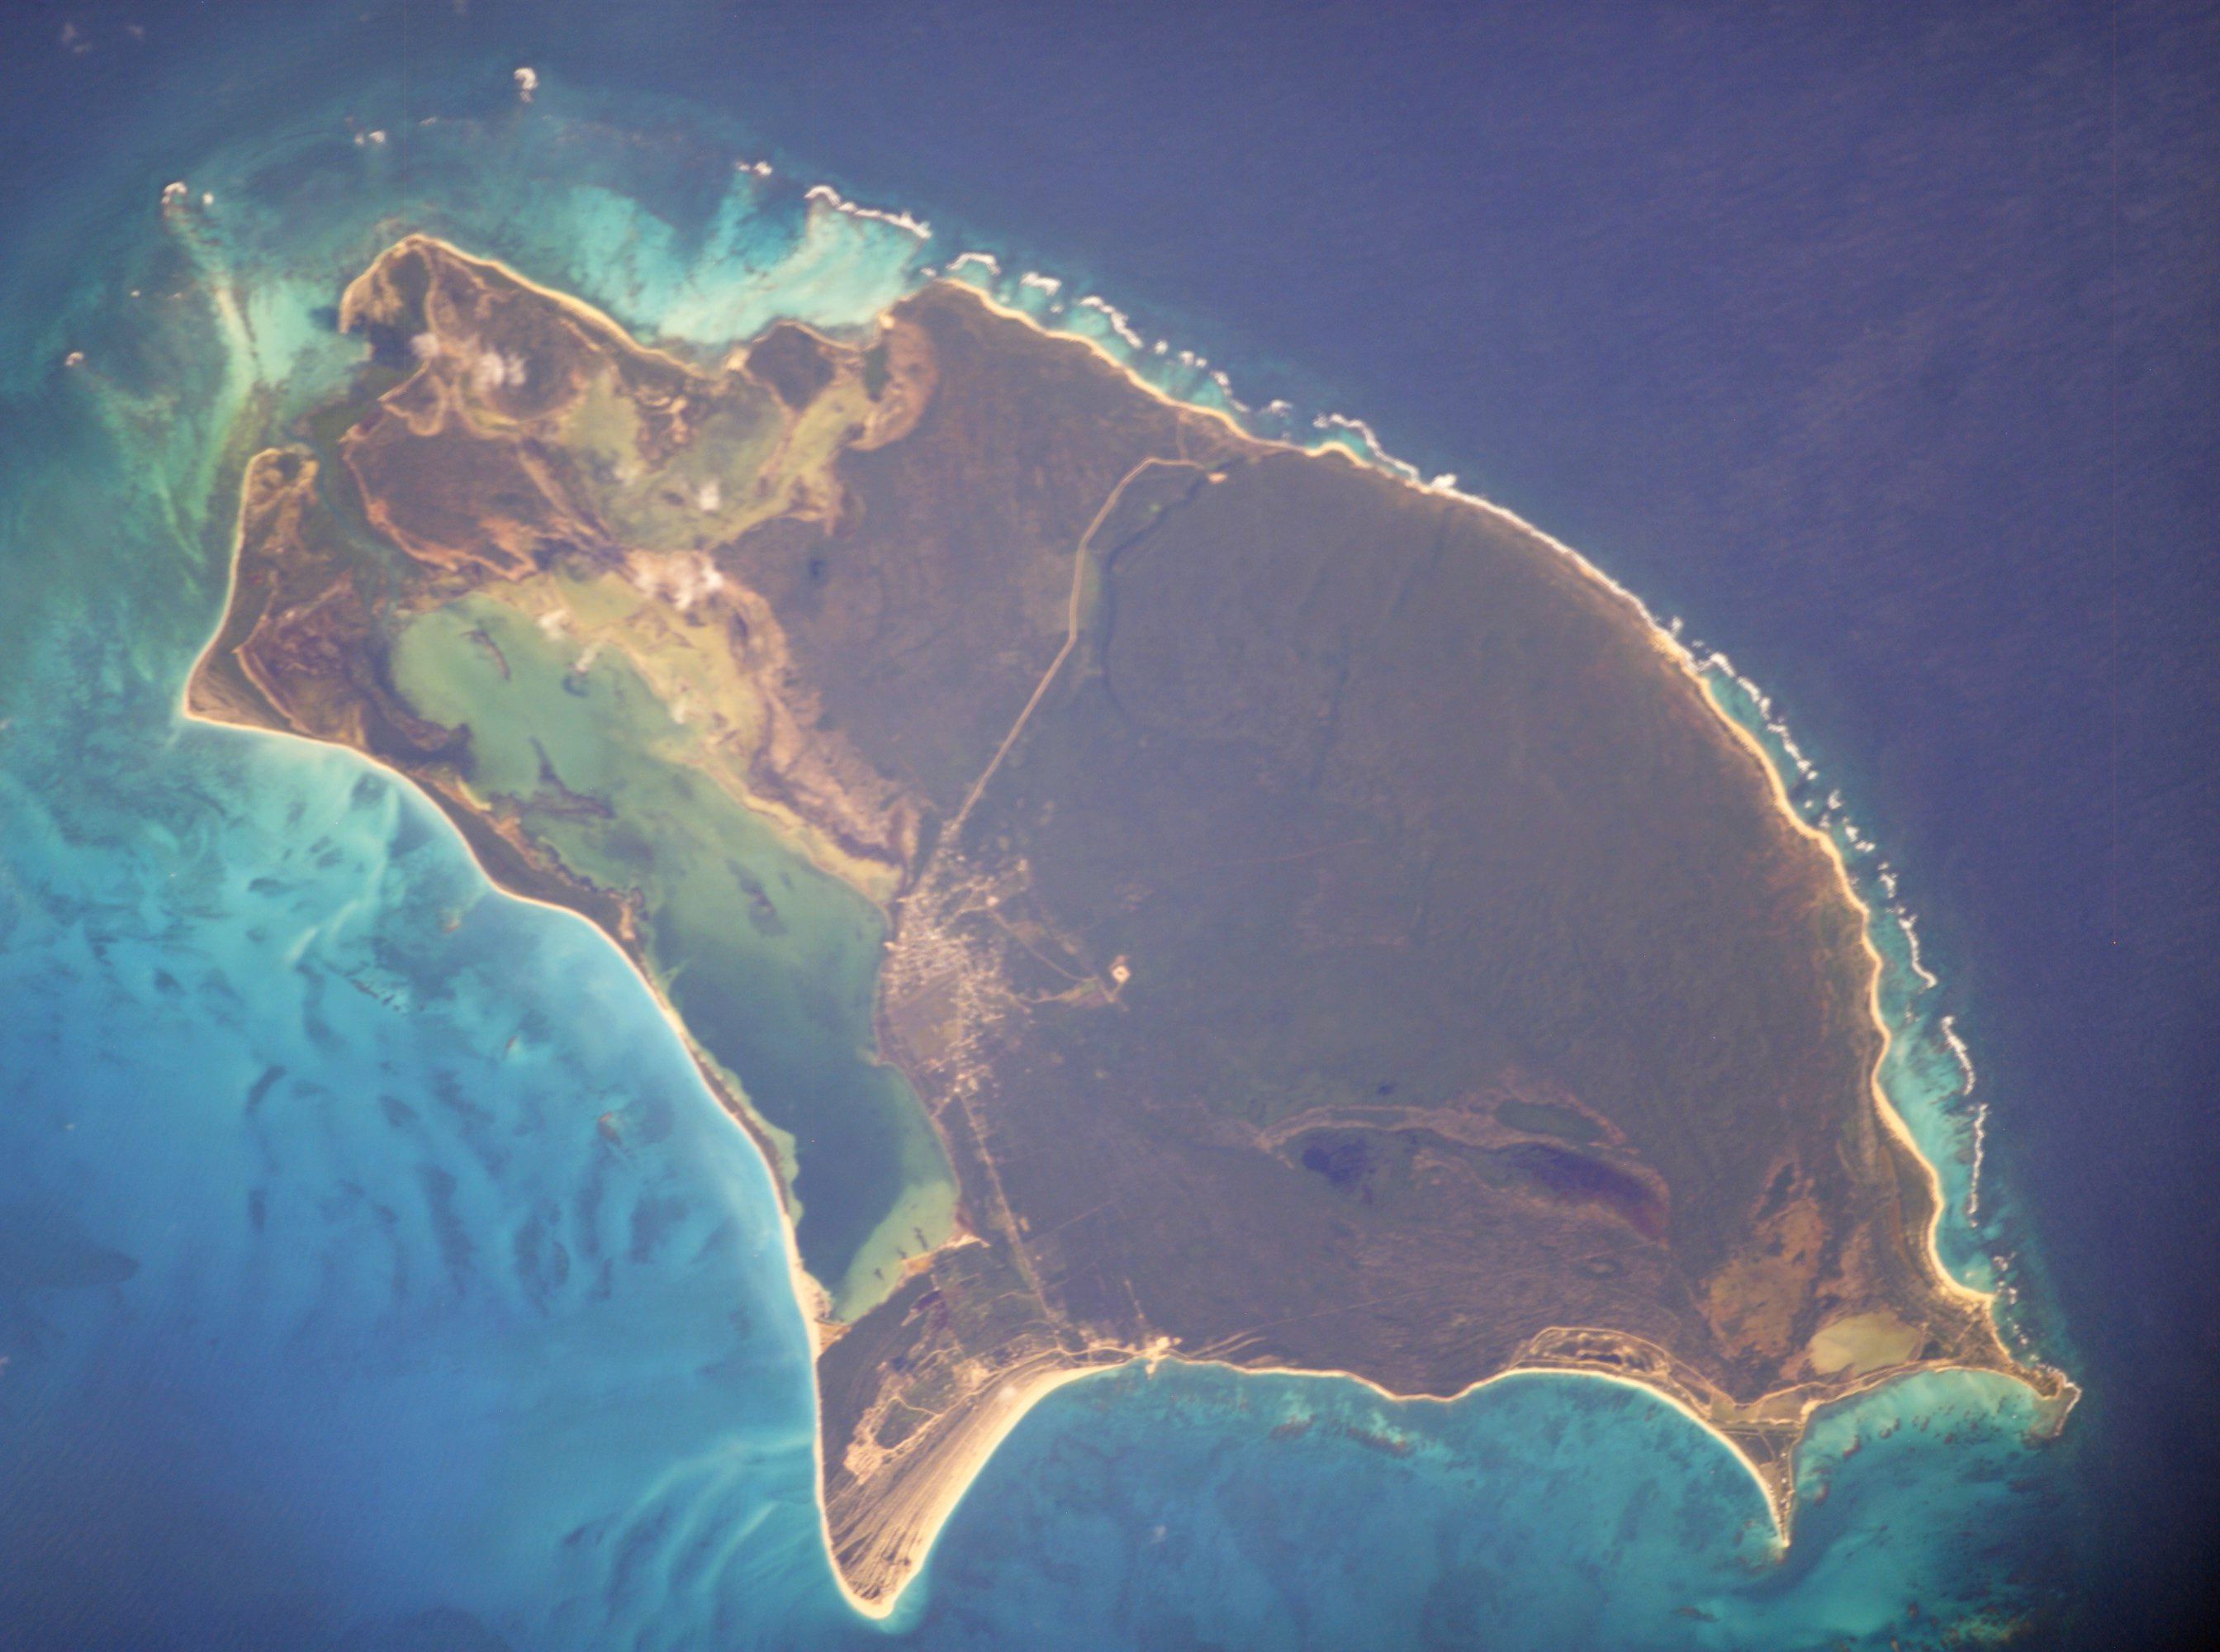 Barbuda_ISS008-E-7945.jpg